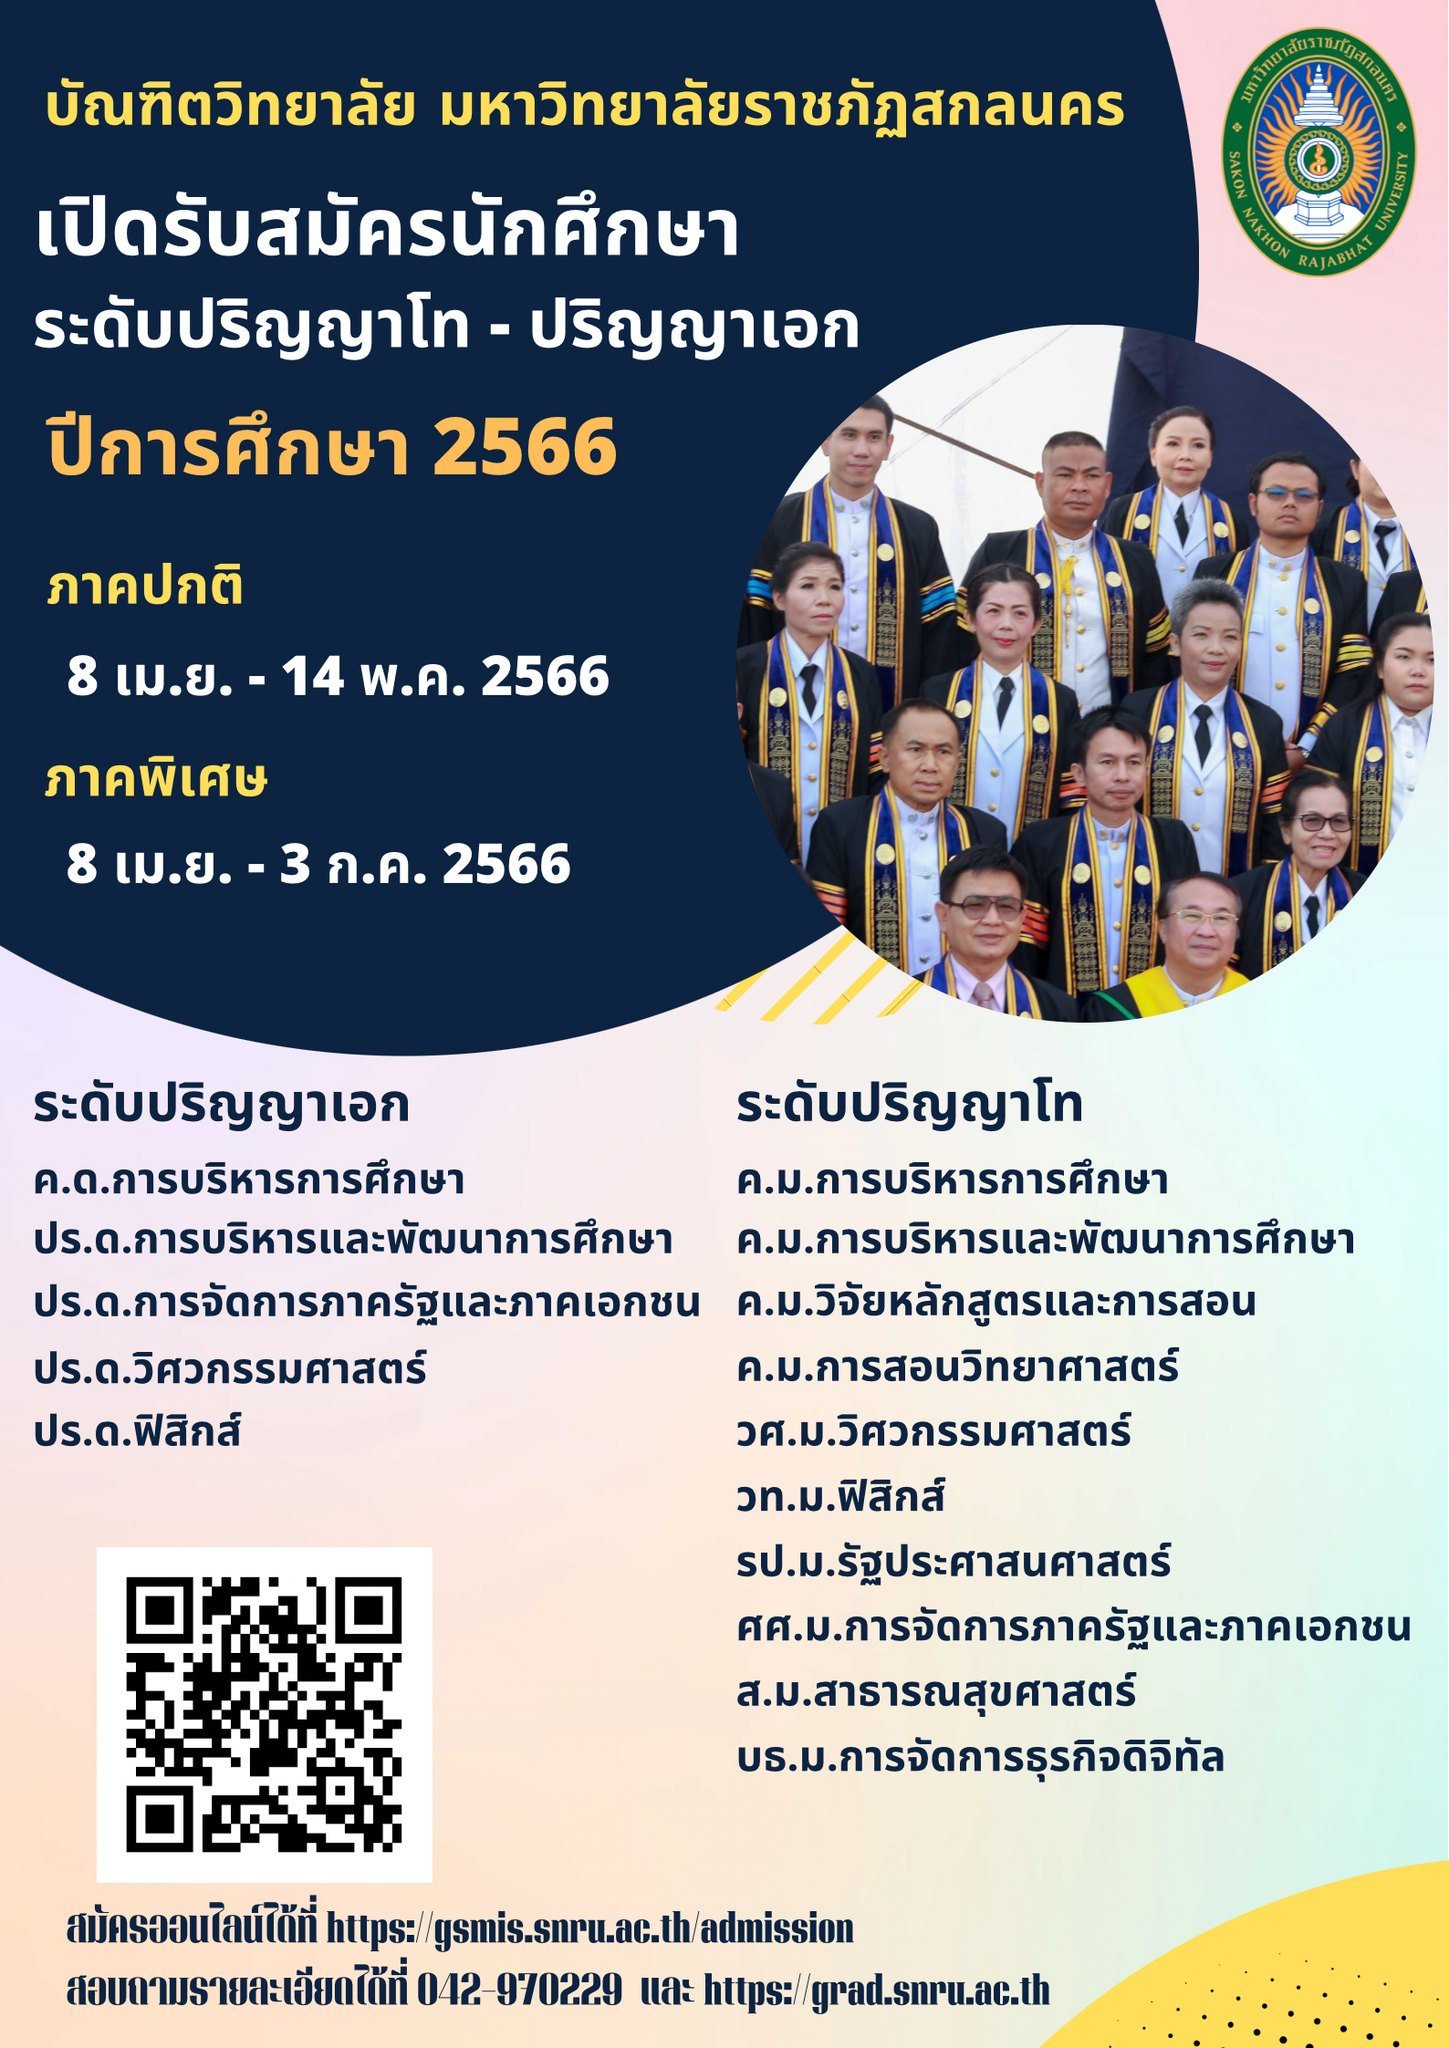 รับสมัครนักศึกษาระดับบัณฑิตศึกษา (โท, เอก) ประจำปีการศึกษา 2566